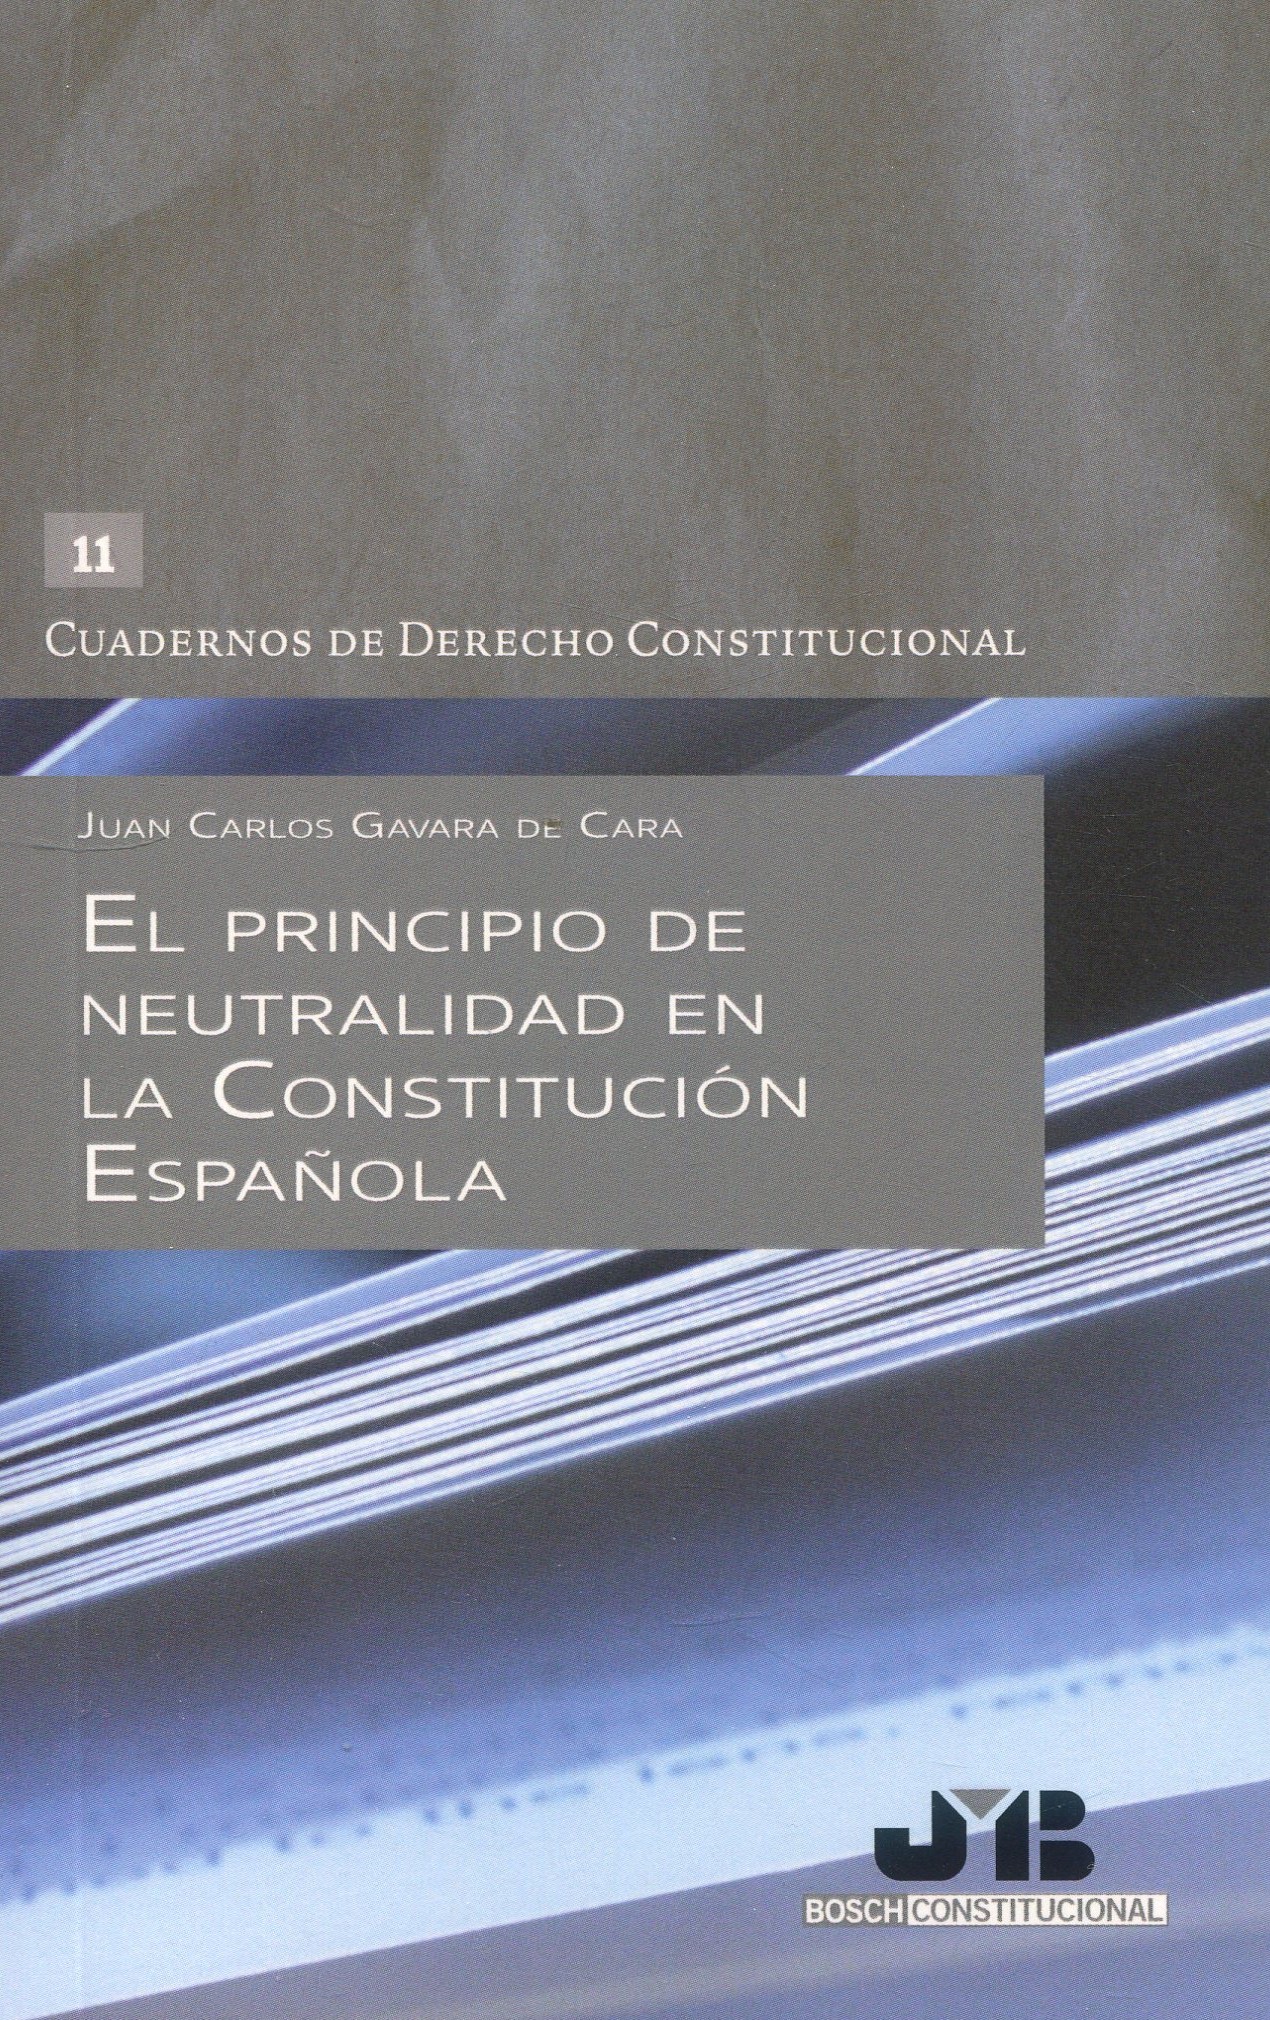 El principio de neutralidad en la Constitución Española